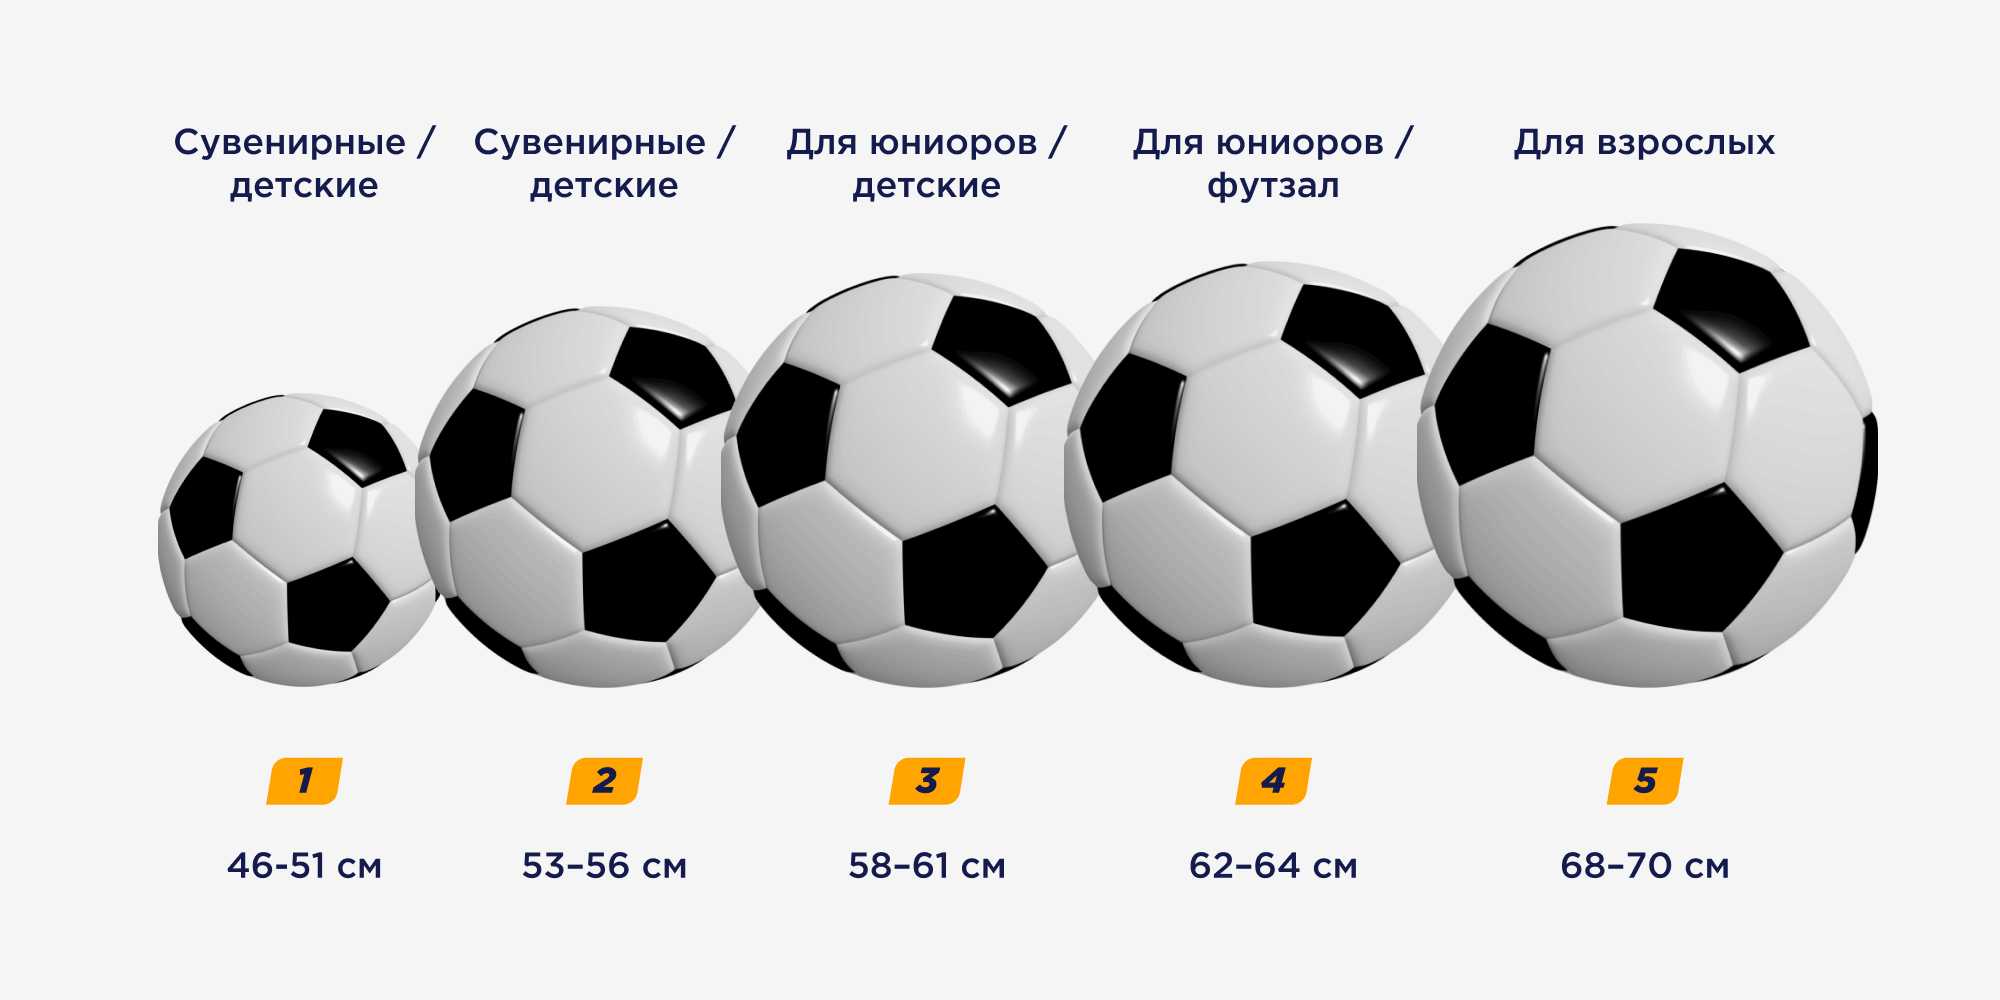 Футбольные мячи чемпионатов мира с 1930 по 2010 года.